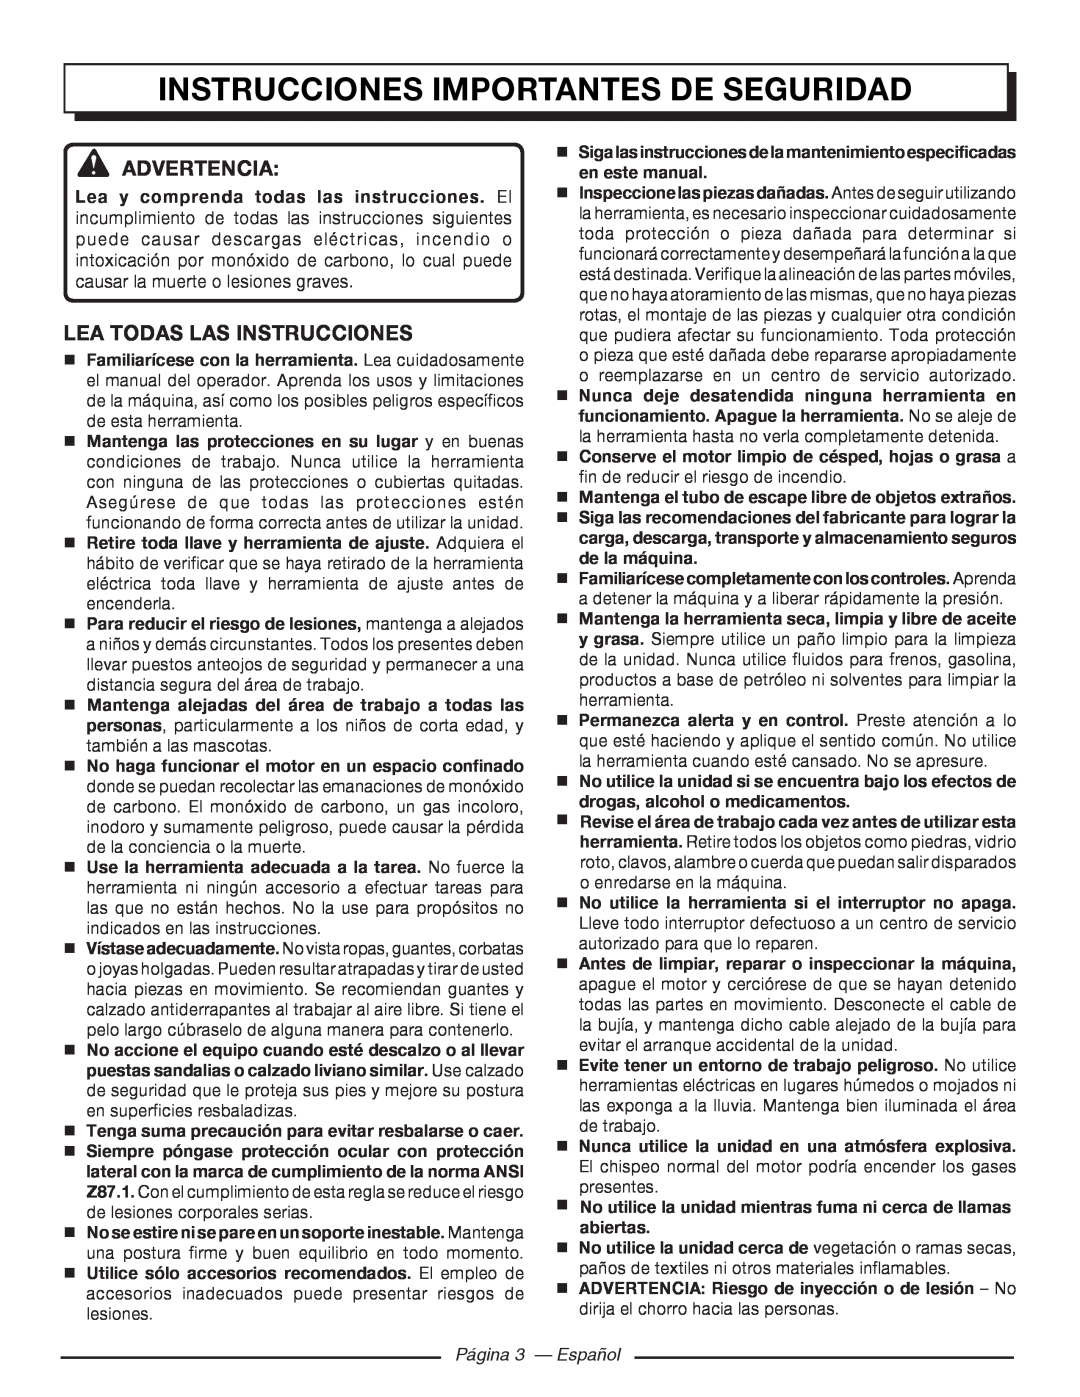 Homelite UT80546 Instrucciones Importantes De Seguridad, Advertencia, Lea Todas Las Instrucciones, Página 3 - Español 